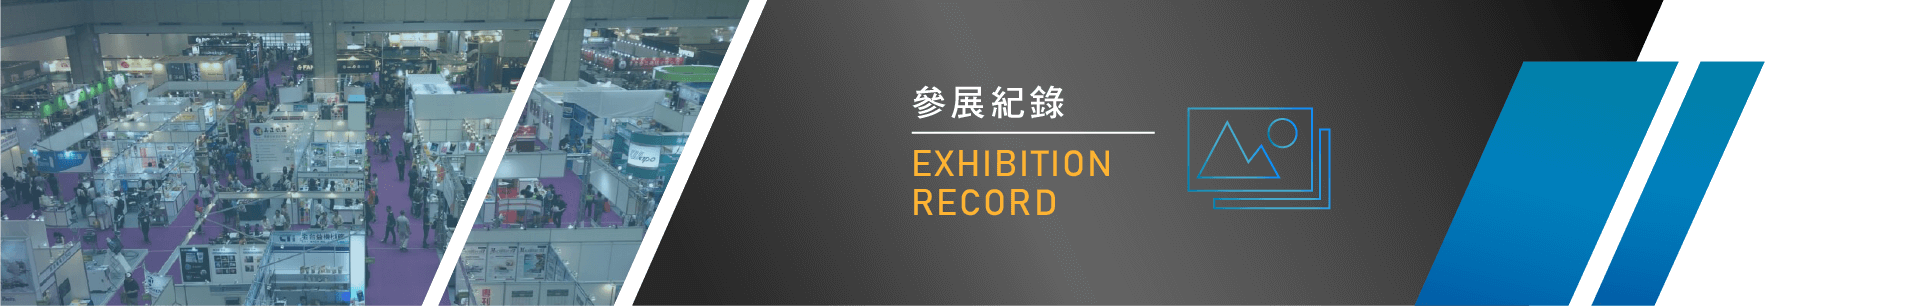 2018 上海國際加工包裝展